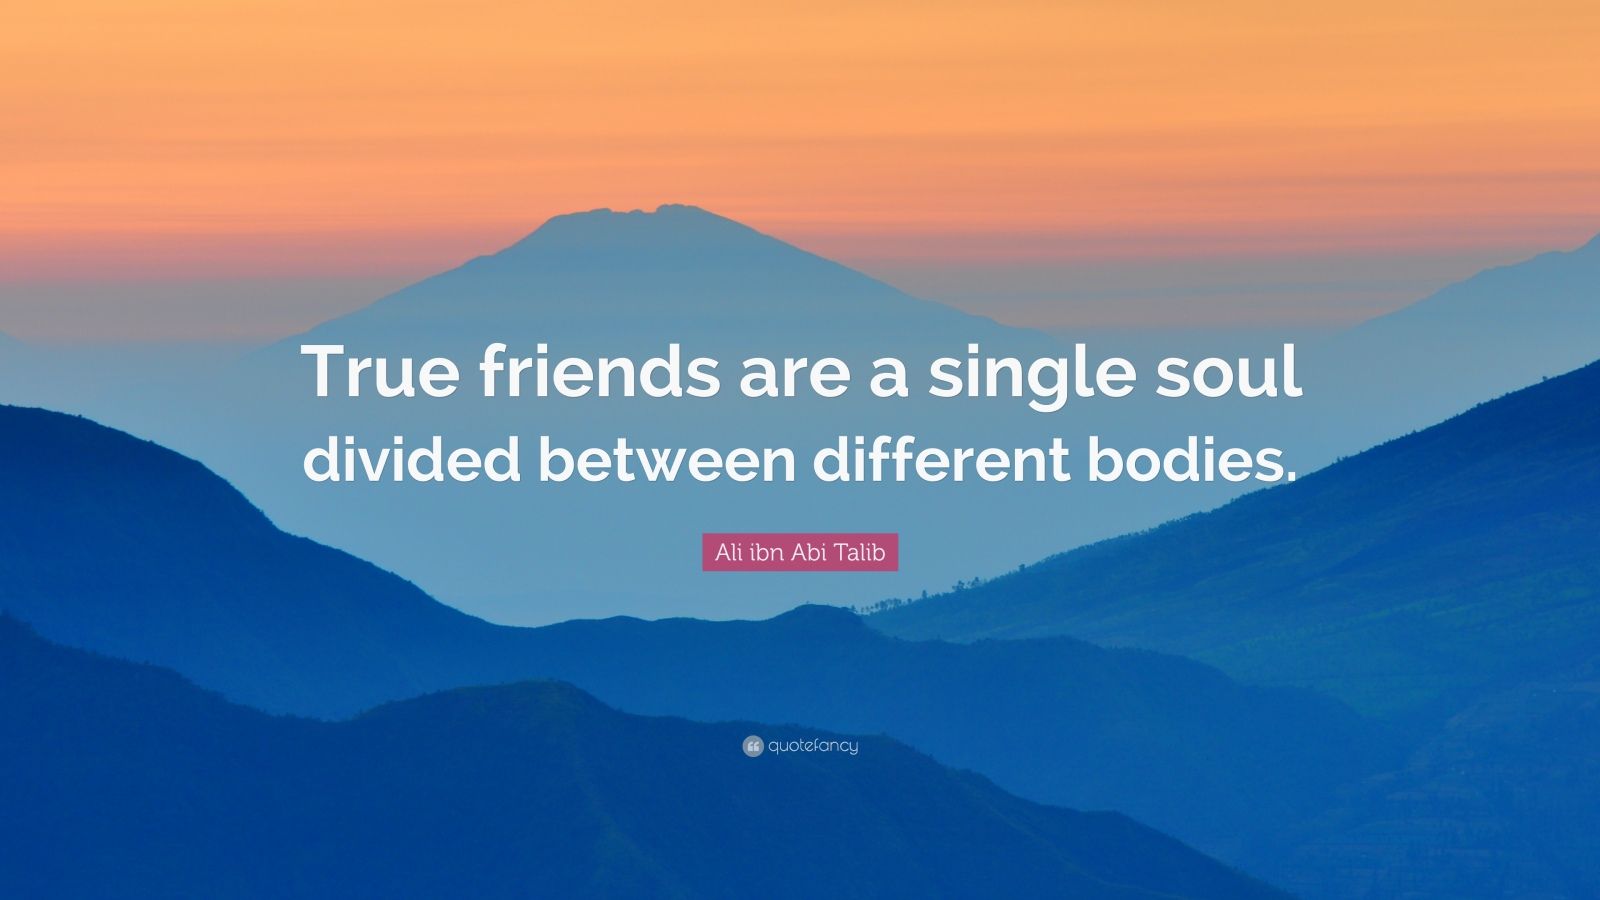 Ali ibn Abi Talib Quote: “True friends are a single soul divided